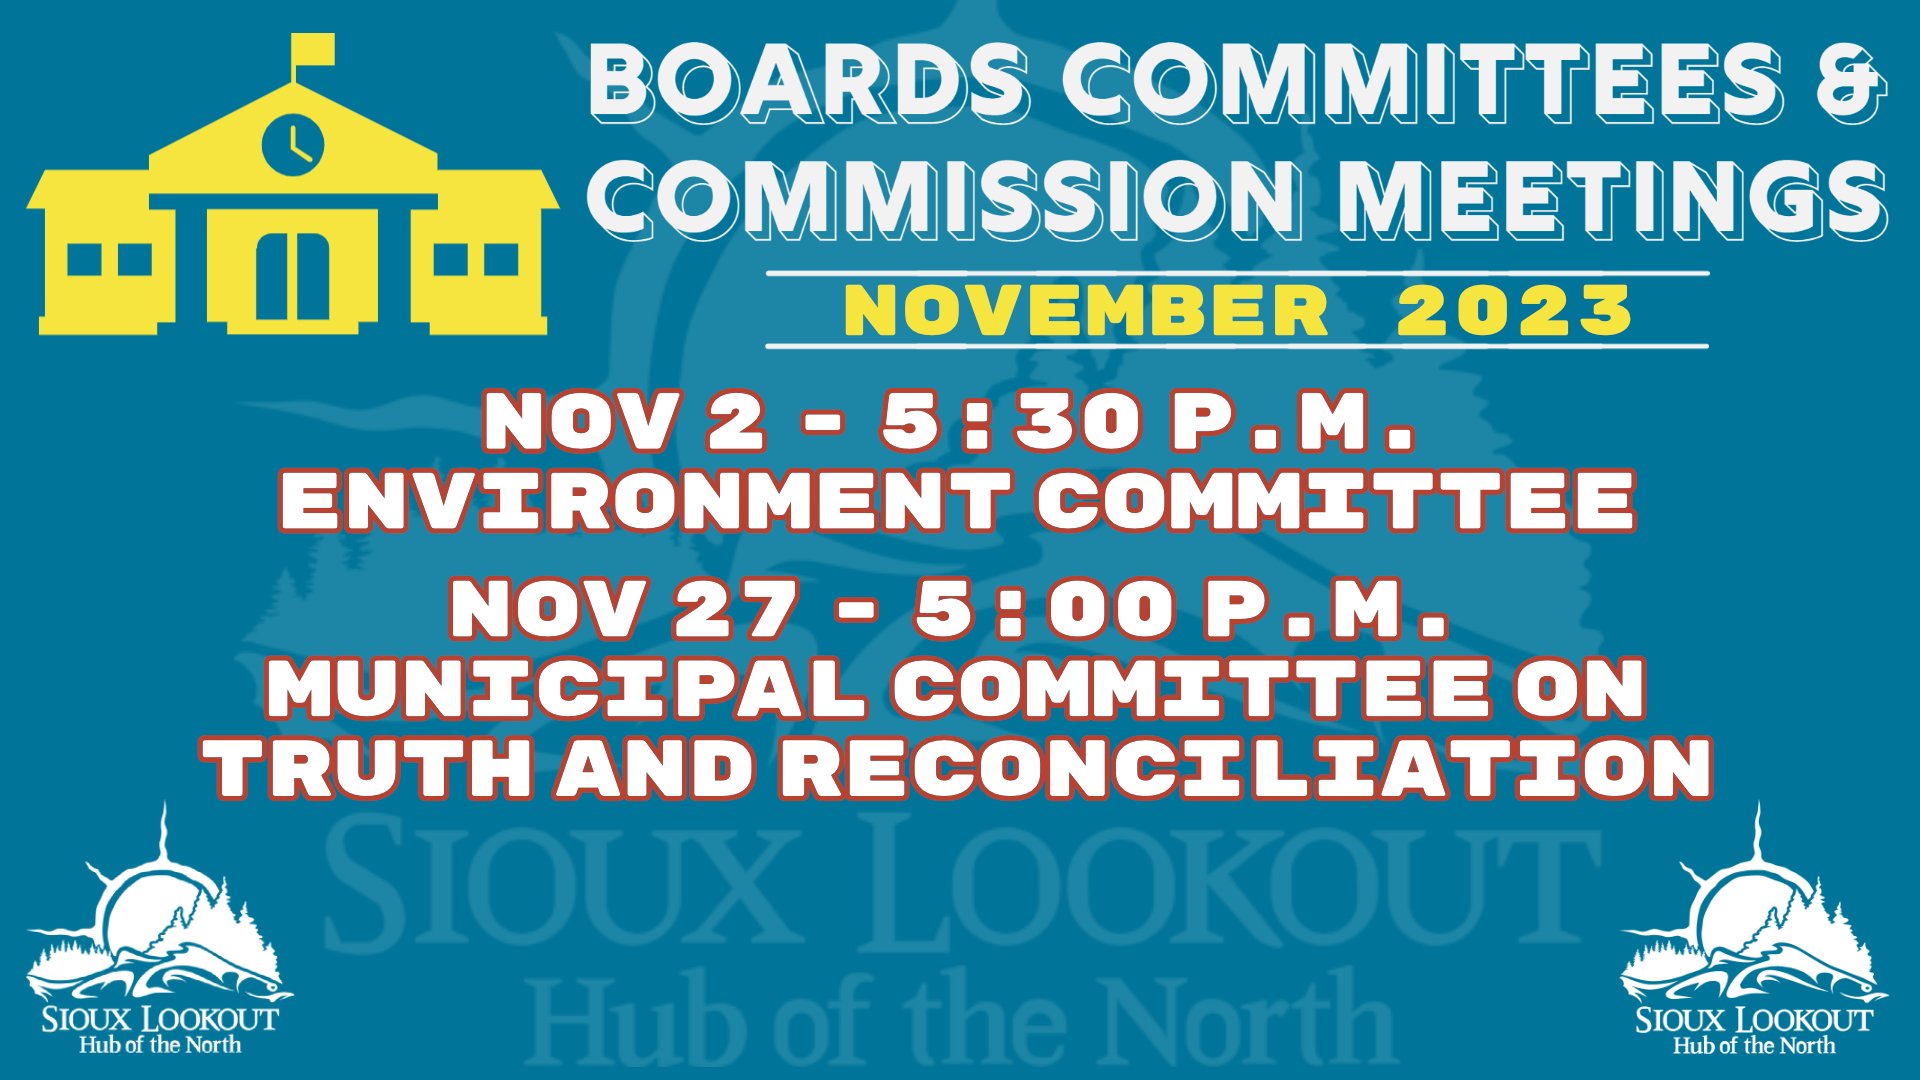 Committee Meetings November 2023